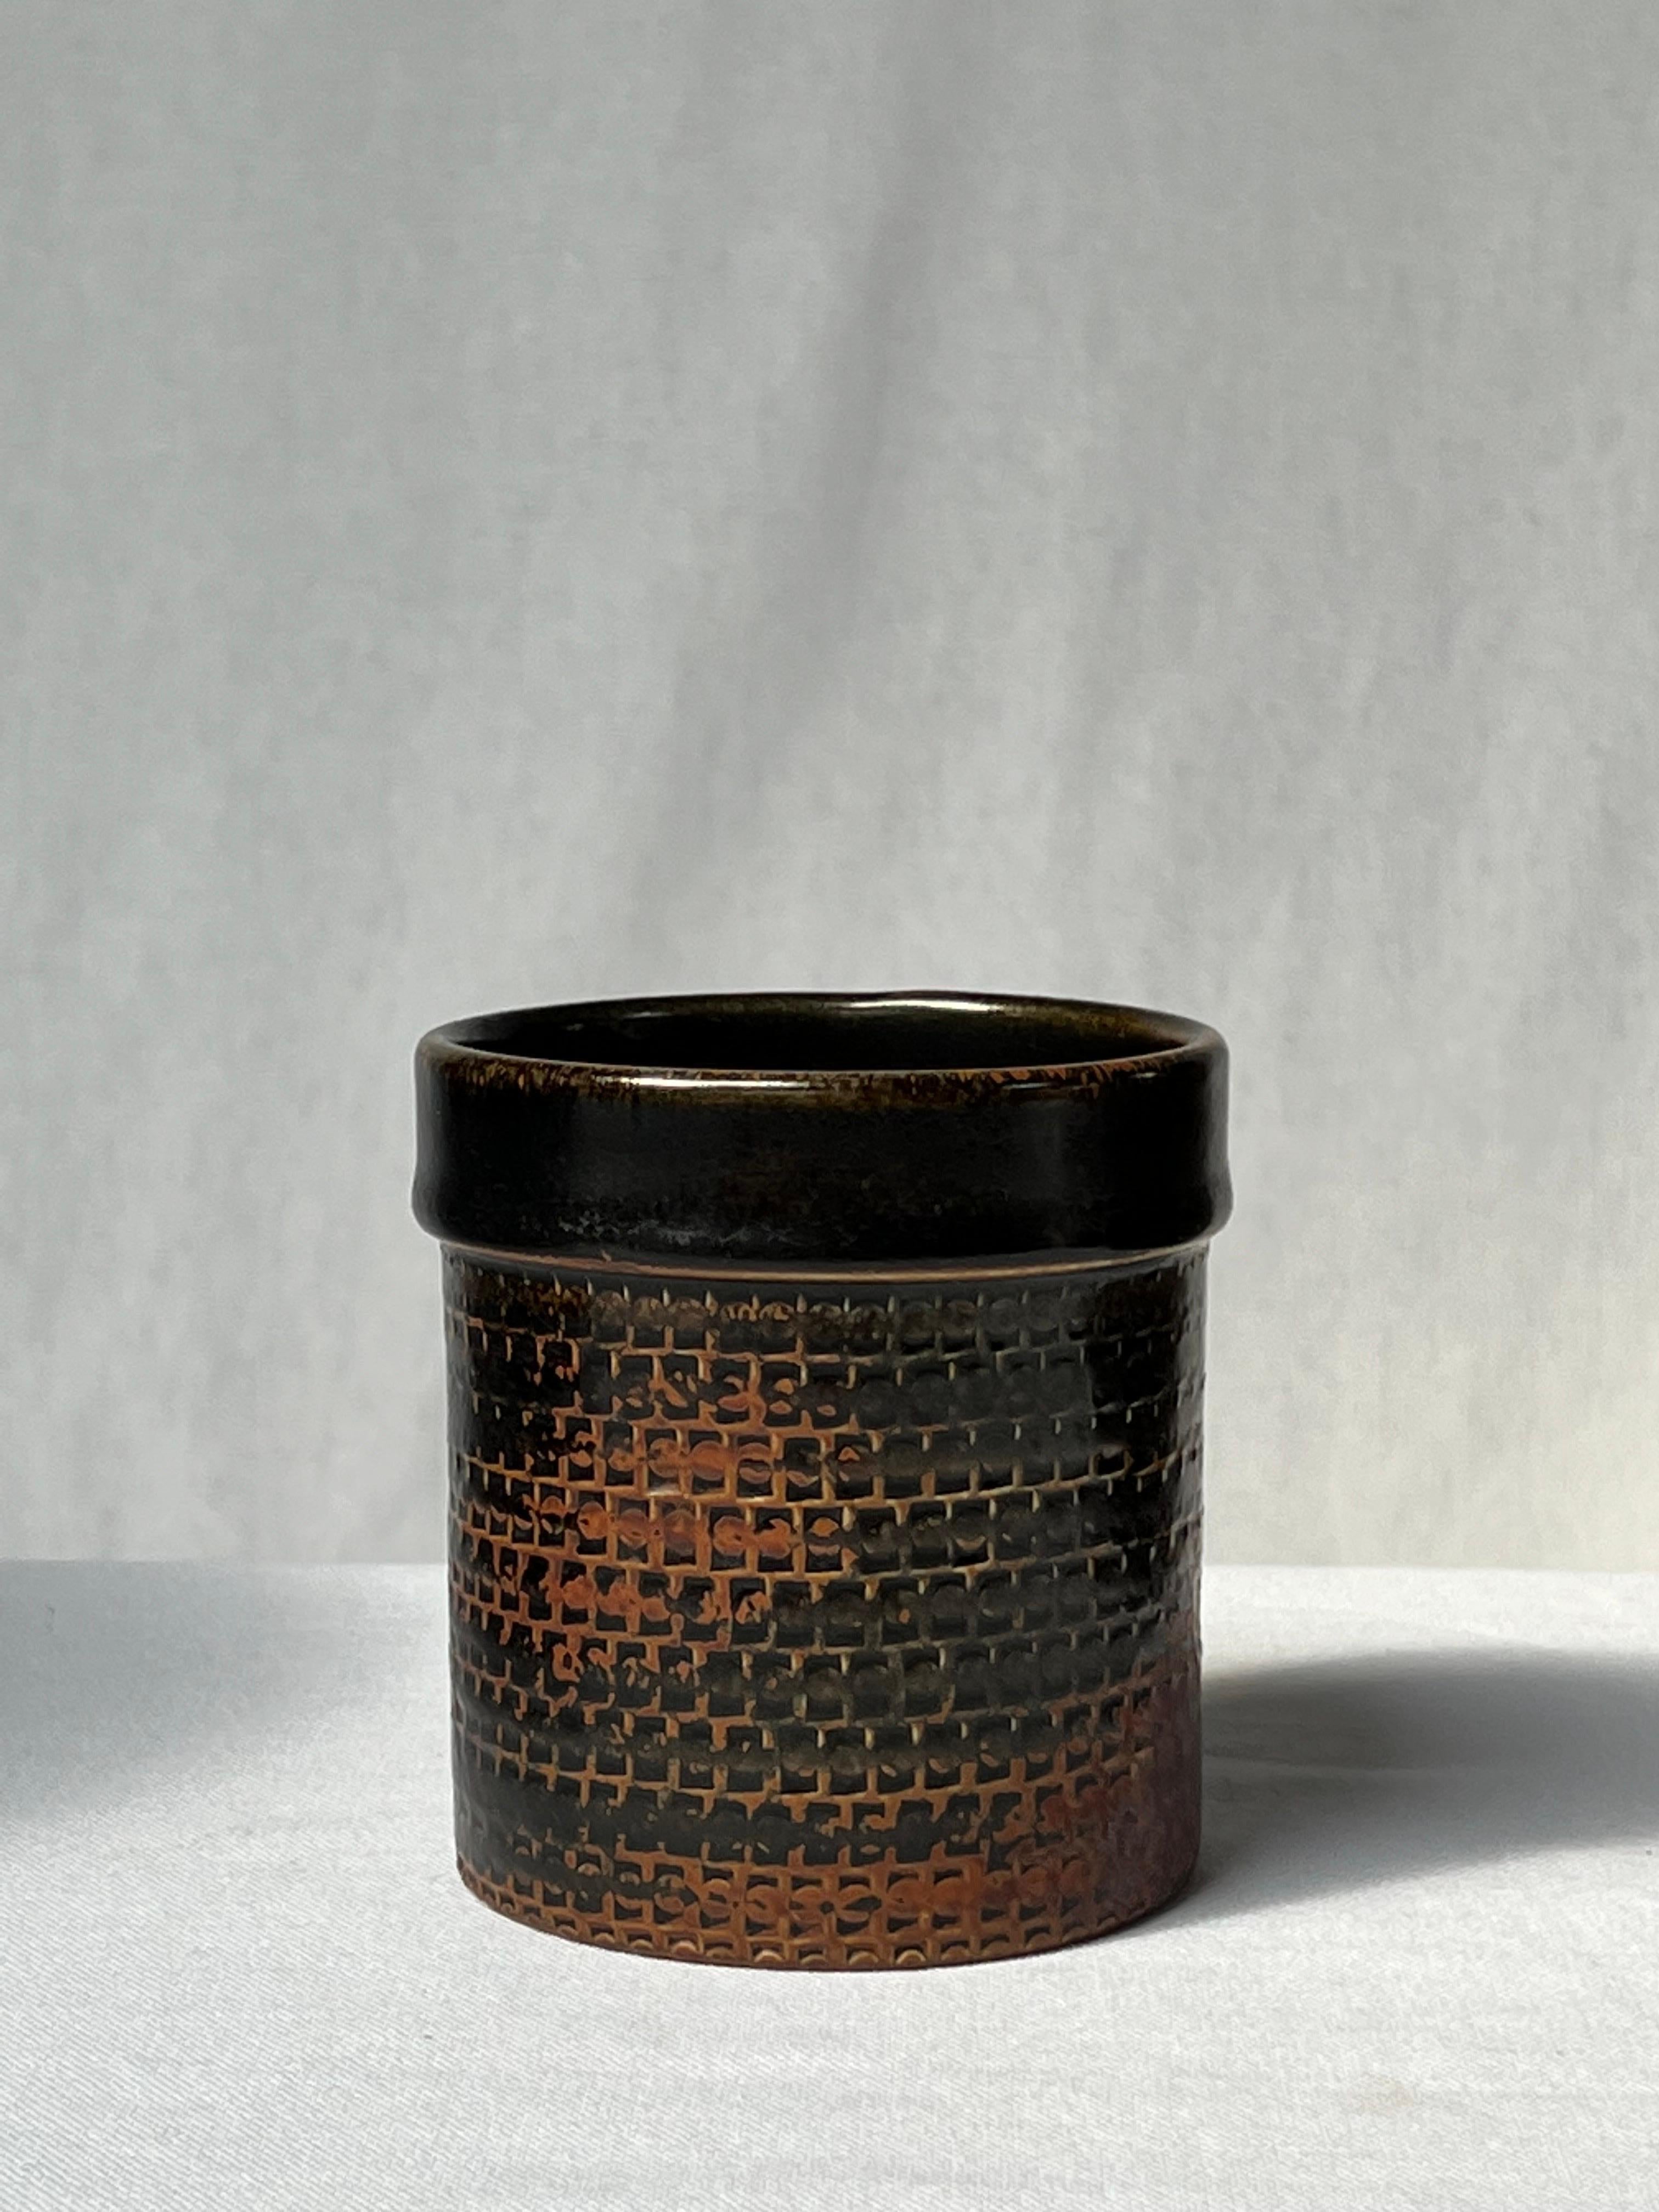 Vase émaillé noir du maître céramiste suédois Stig Lindberg. Du brun clair sur les bords au noir foncé. Il s'agit de la glaçure japonaise tenmoku, également utilisée par les anciens Chinois. Détails élégants et joli motif. Pièce unique réalisée à la